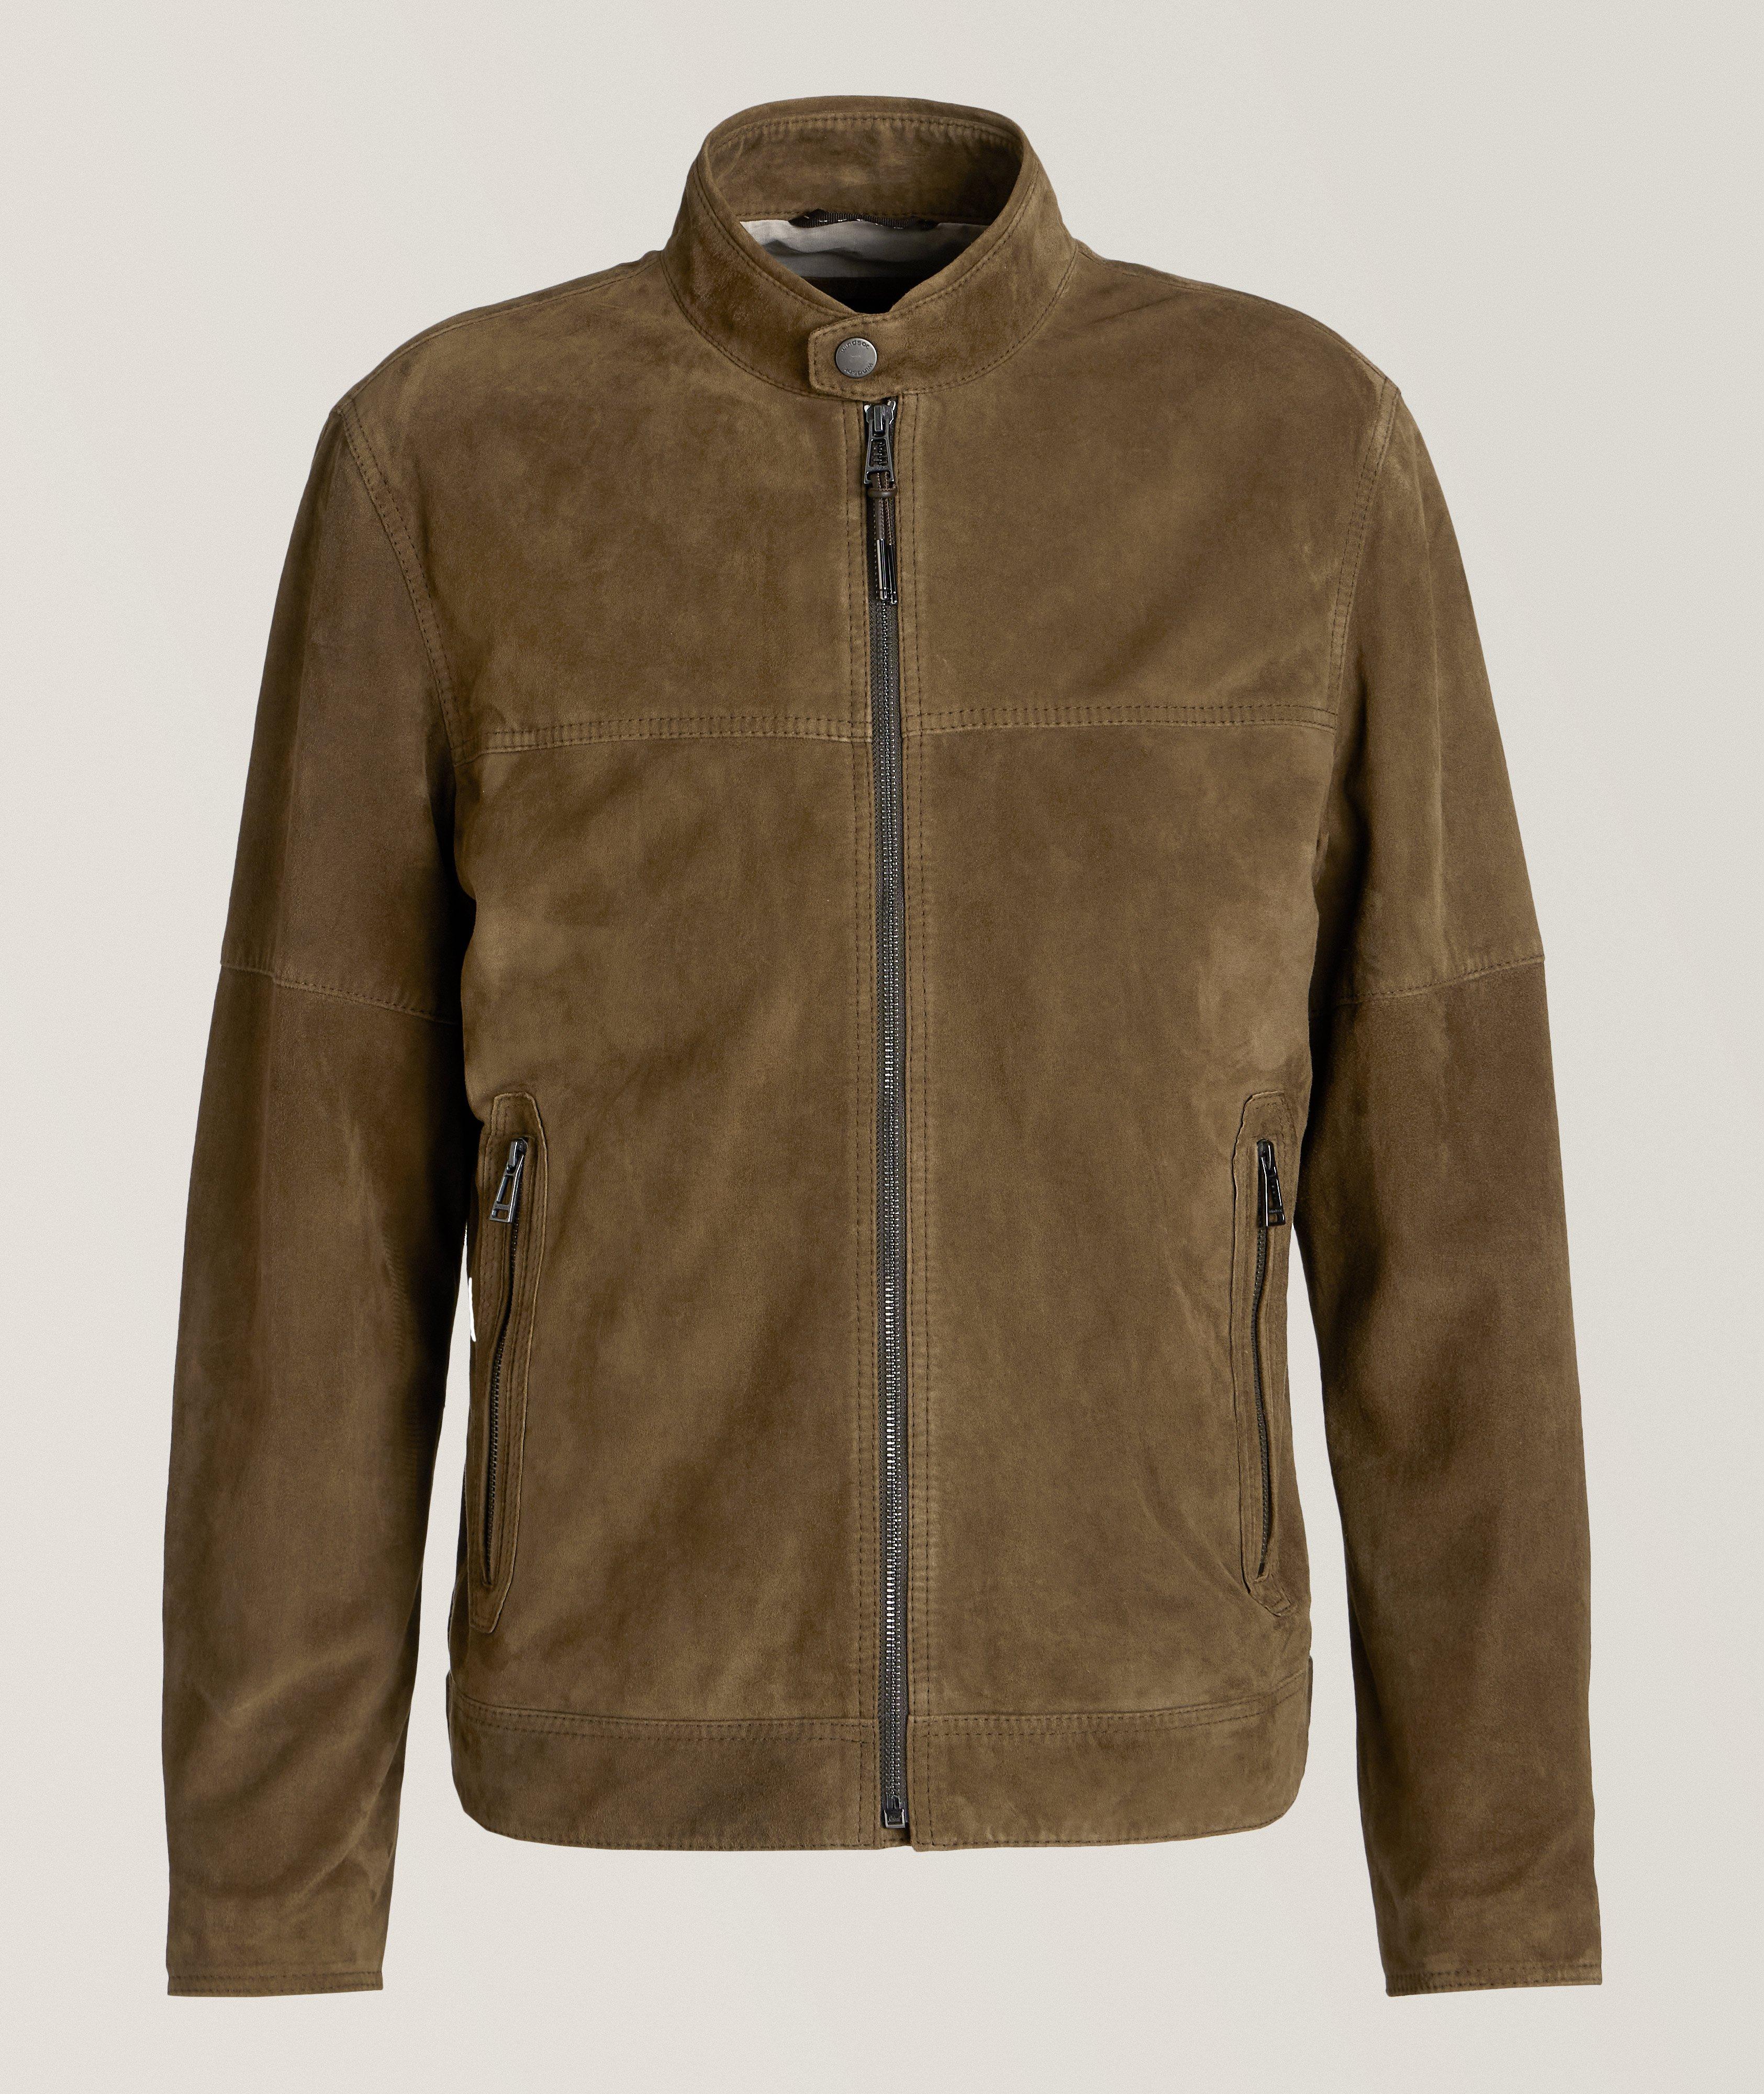 Windsor Bato Chrome-Free Goat Suede Leather Jacket 